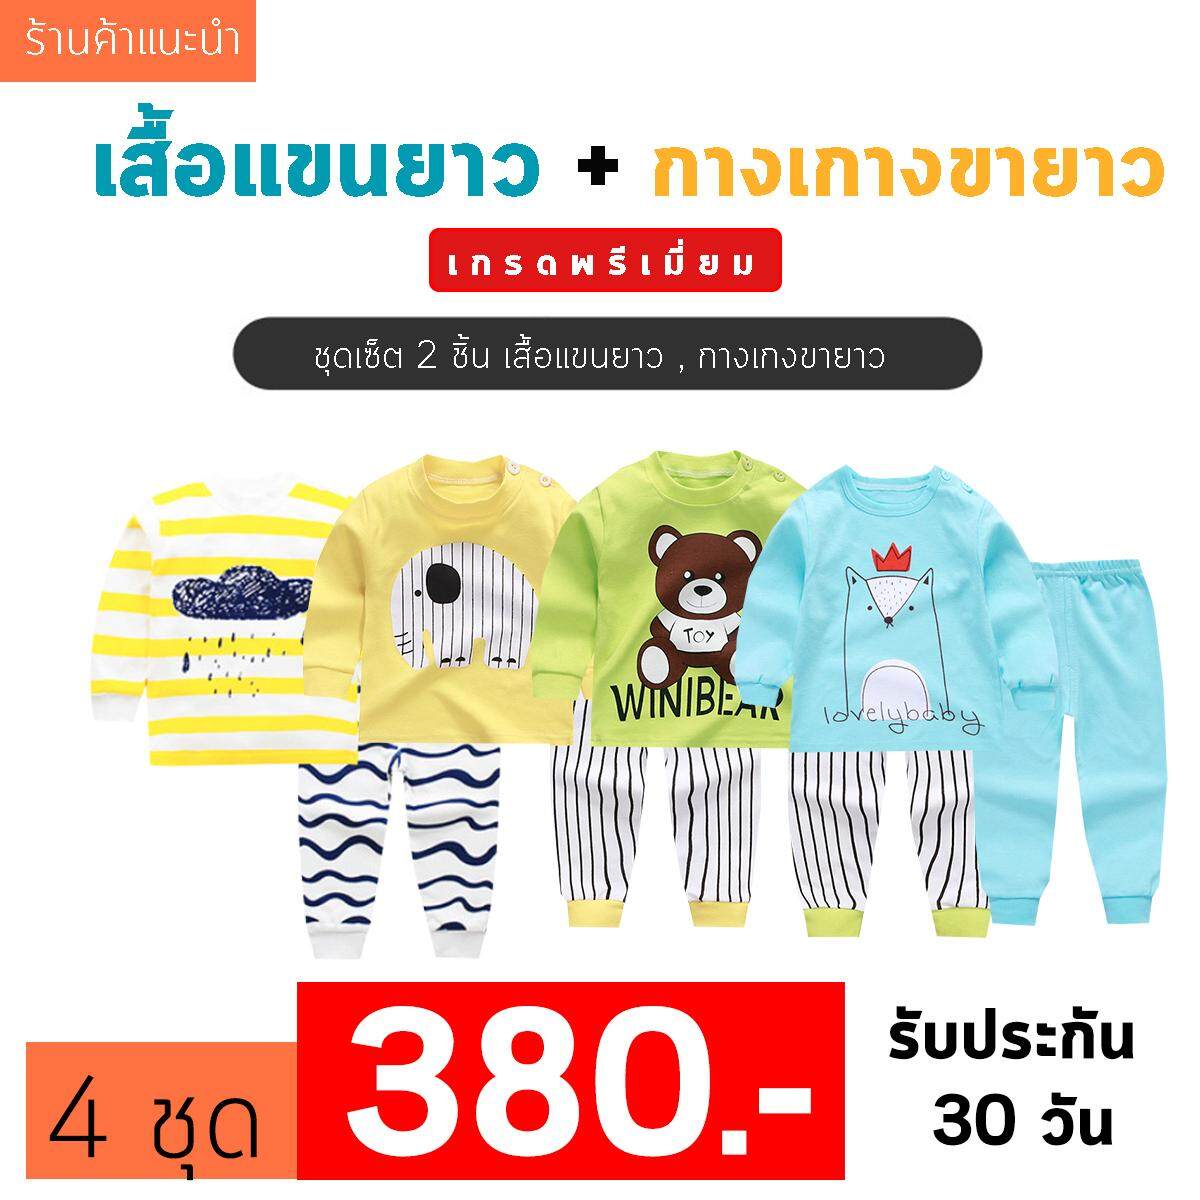 รีวิว ❤️Baby Thailand ชุดเสื้อผ้าเด็ก ชุดนอน เด็ก ชุดเสื้อผ้าเด็ก ชุดนอน เด็ก [เซ็ต2ชิ้น] [ เสื้อแขนยาว + กางเกงขายาว ]ใส่สบายเนื้อผ้า Cotton ราคาพิเศษ ไซส์ 80 -120cm/ 6เดือน-5ปี ชุดนอนเด็ก ผ้านิ่ม เนื้อผ้า